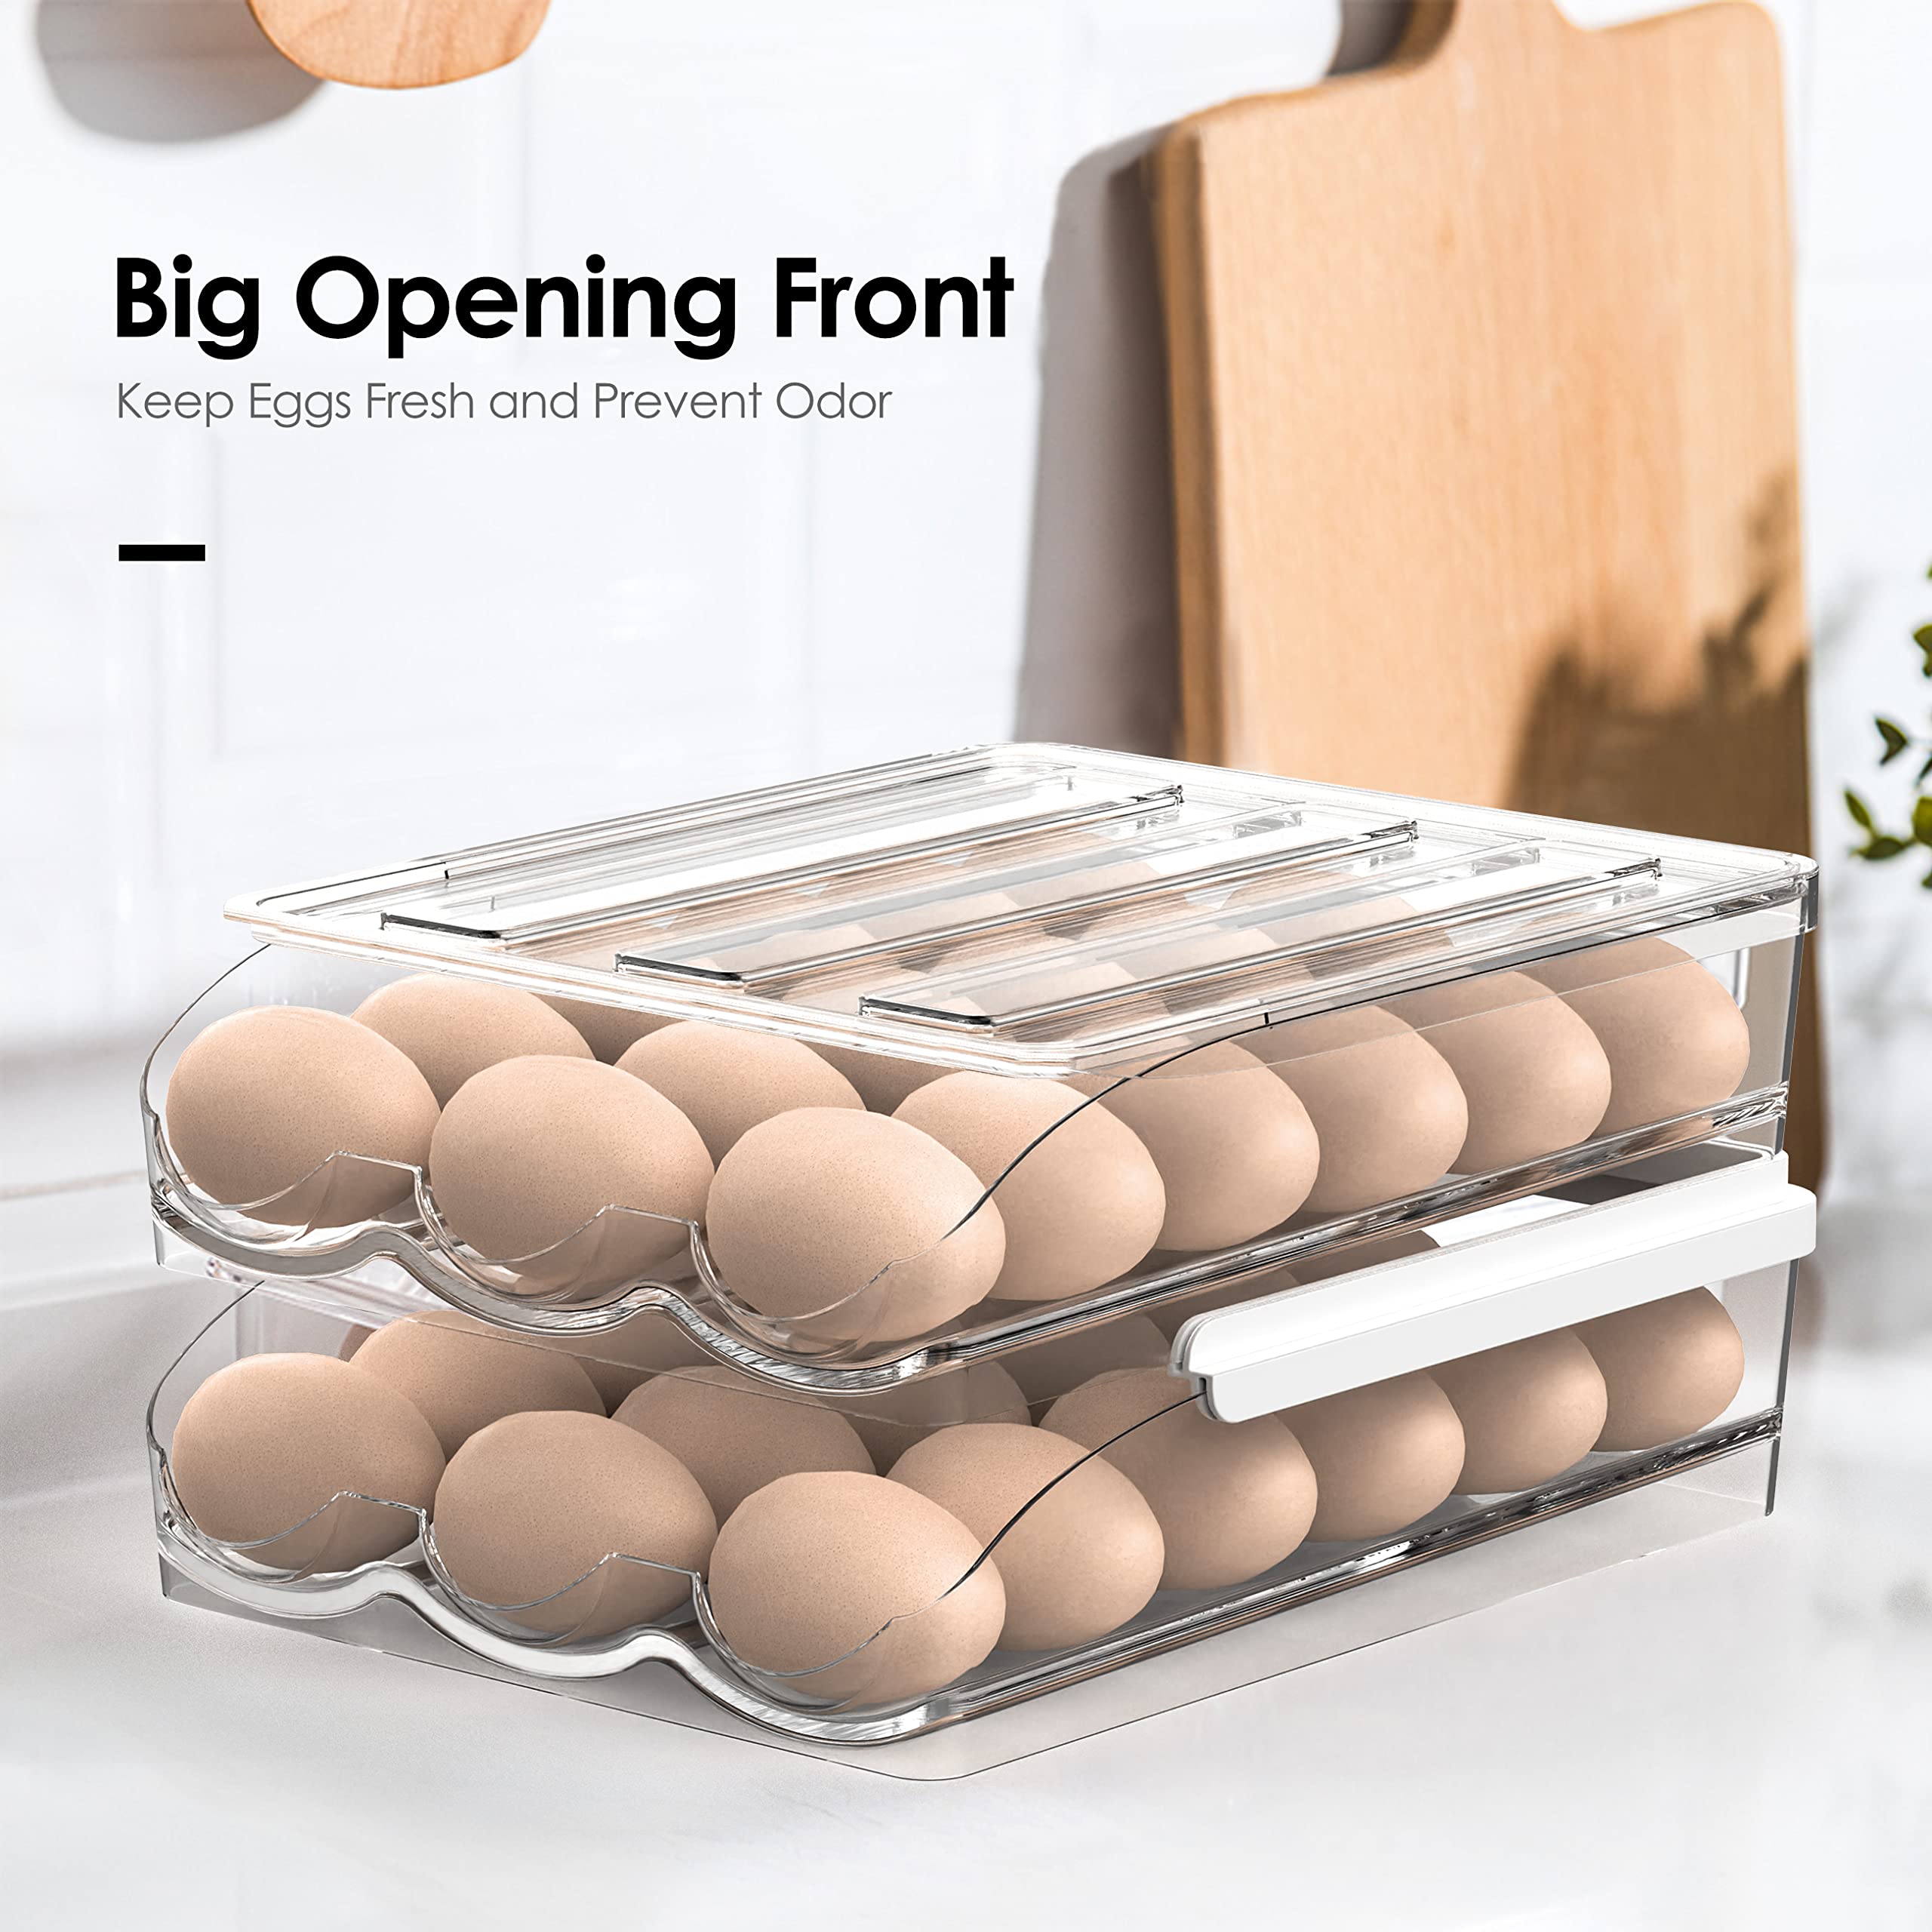 bonusuper Egg Container for Refrigerator, 36 Egg Holder for Refrigerator, Egg Storage Container Organizer Egg Tray Household Egg Fresh Storage Box for Fridge (2 Layer)